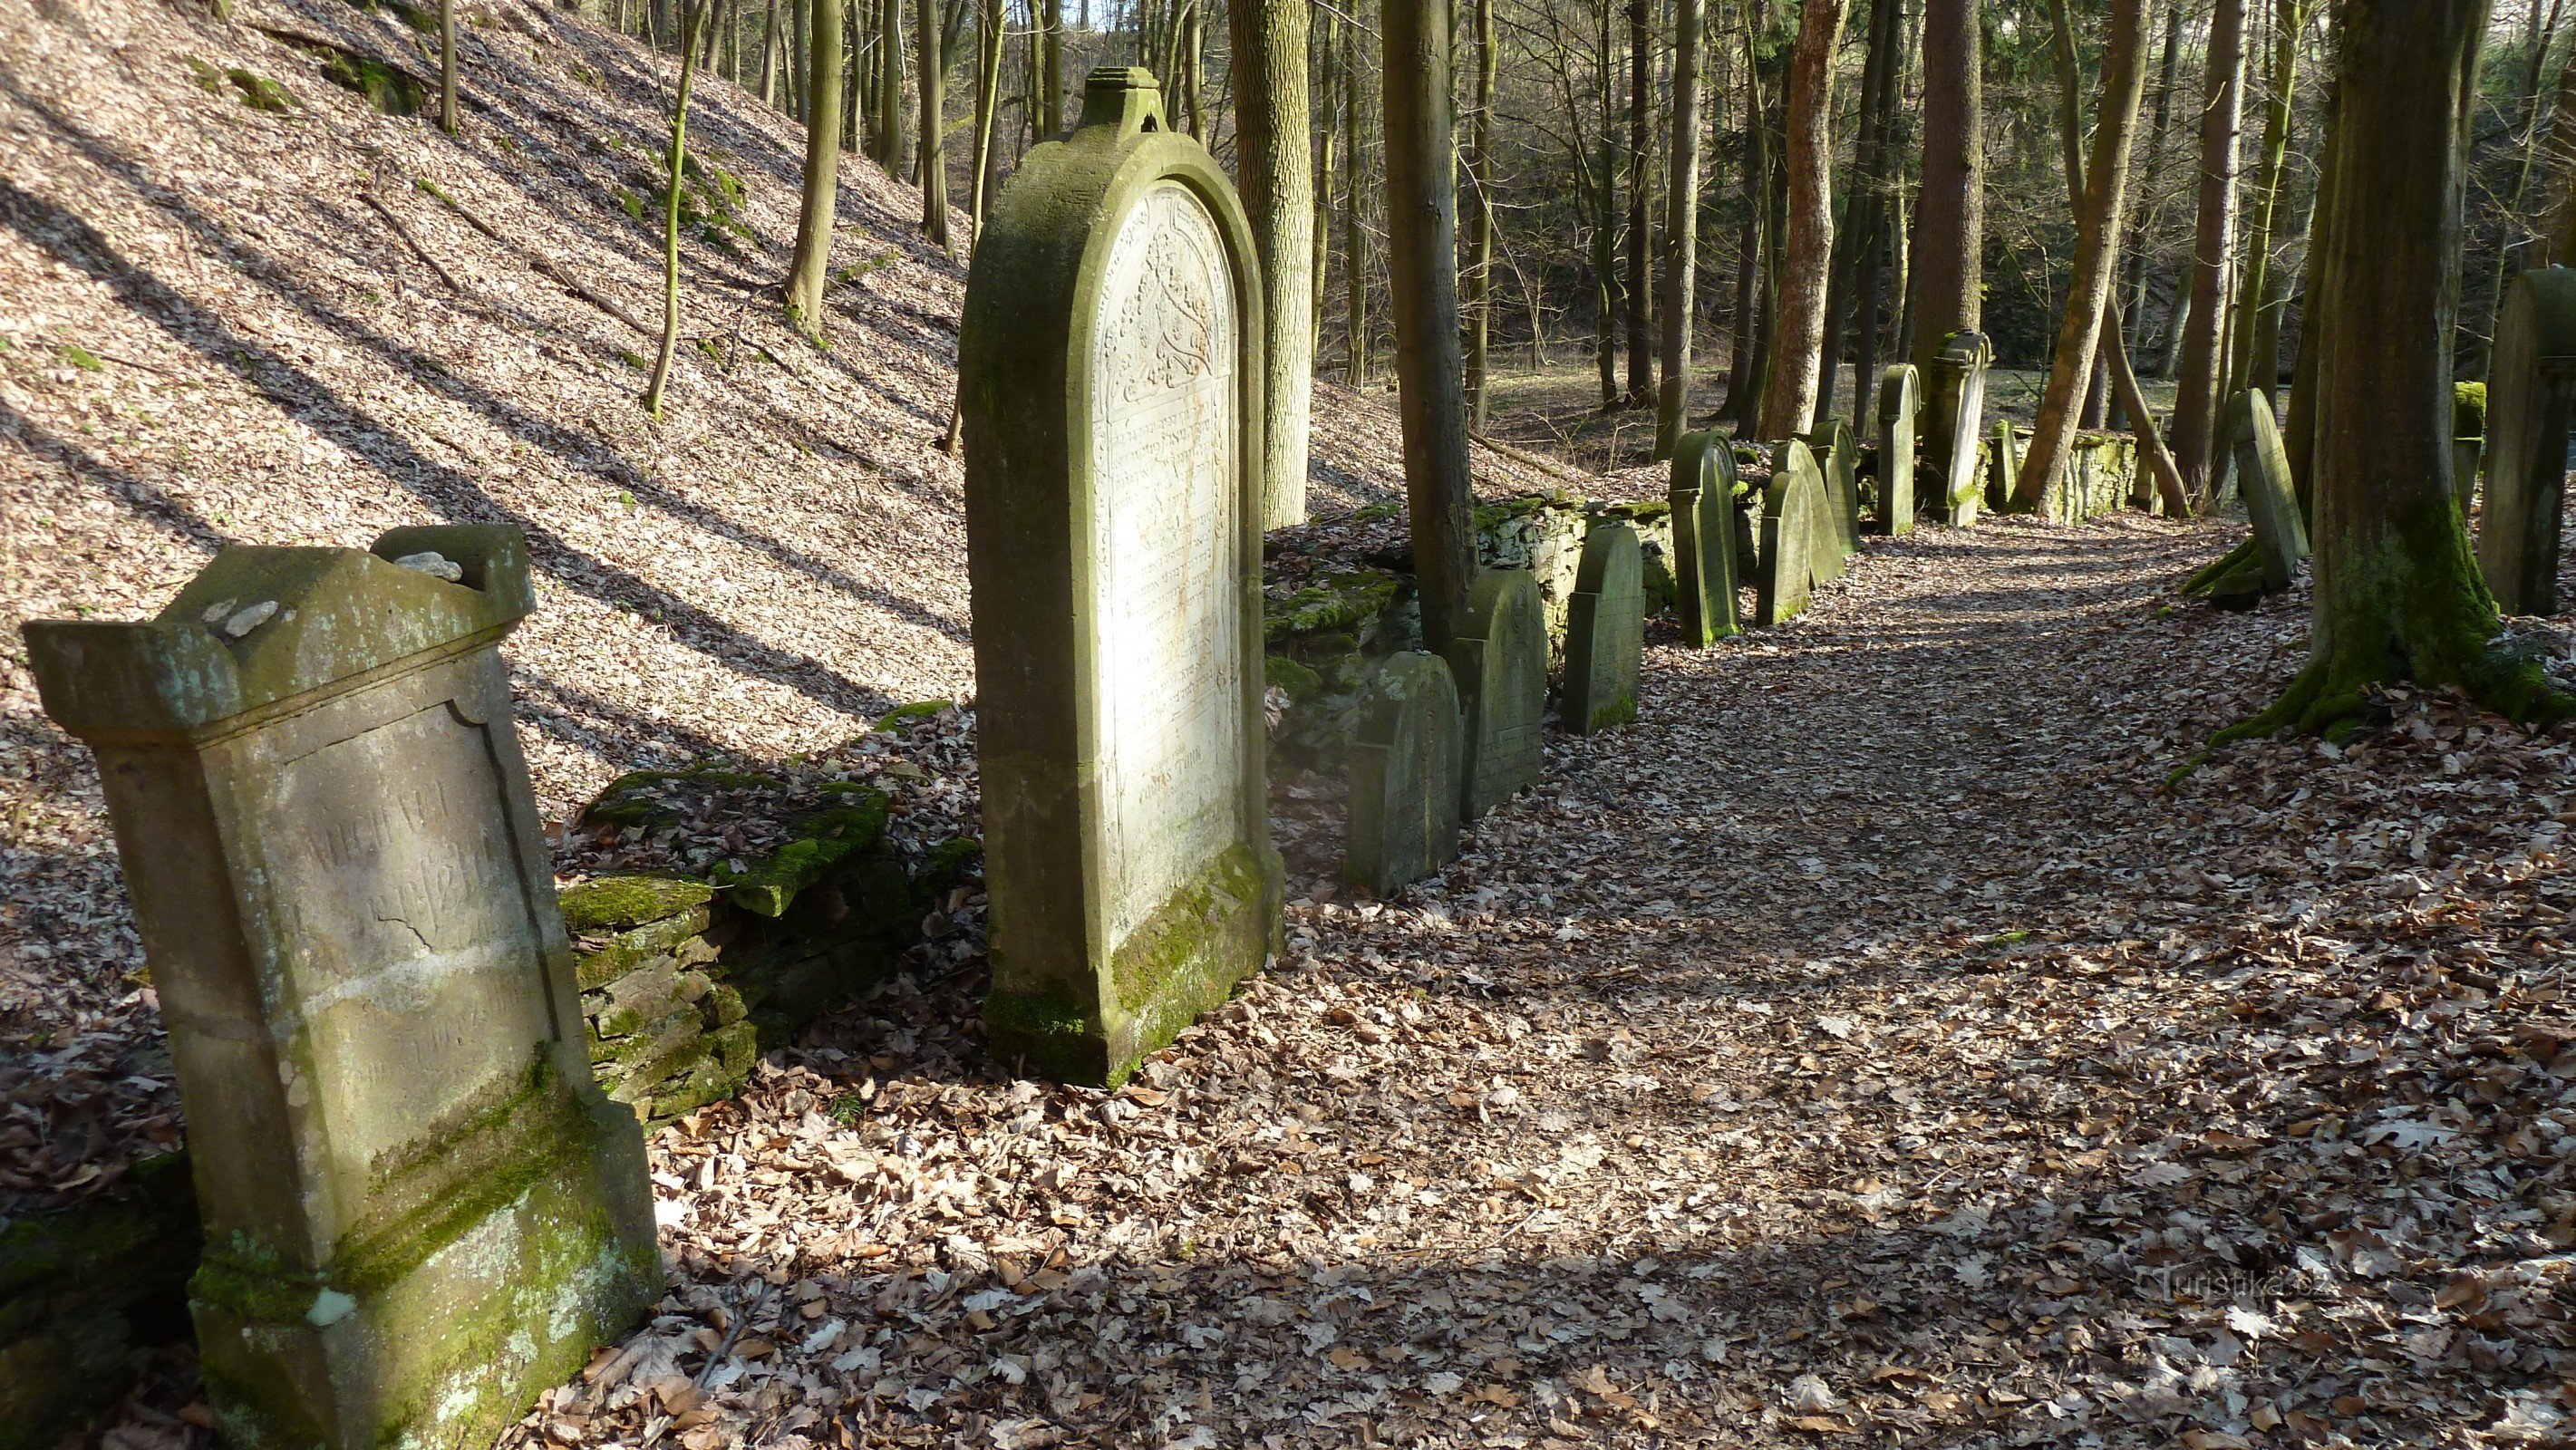 Podbrzezi jødiske kirkegård